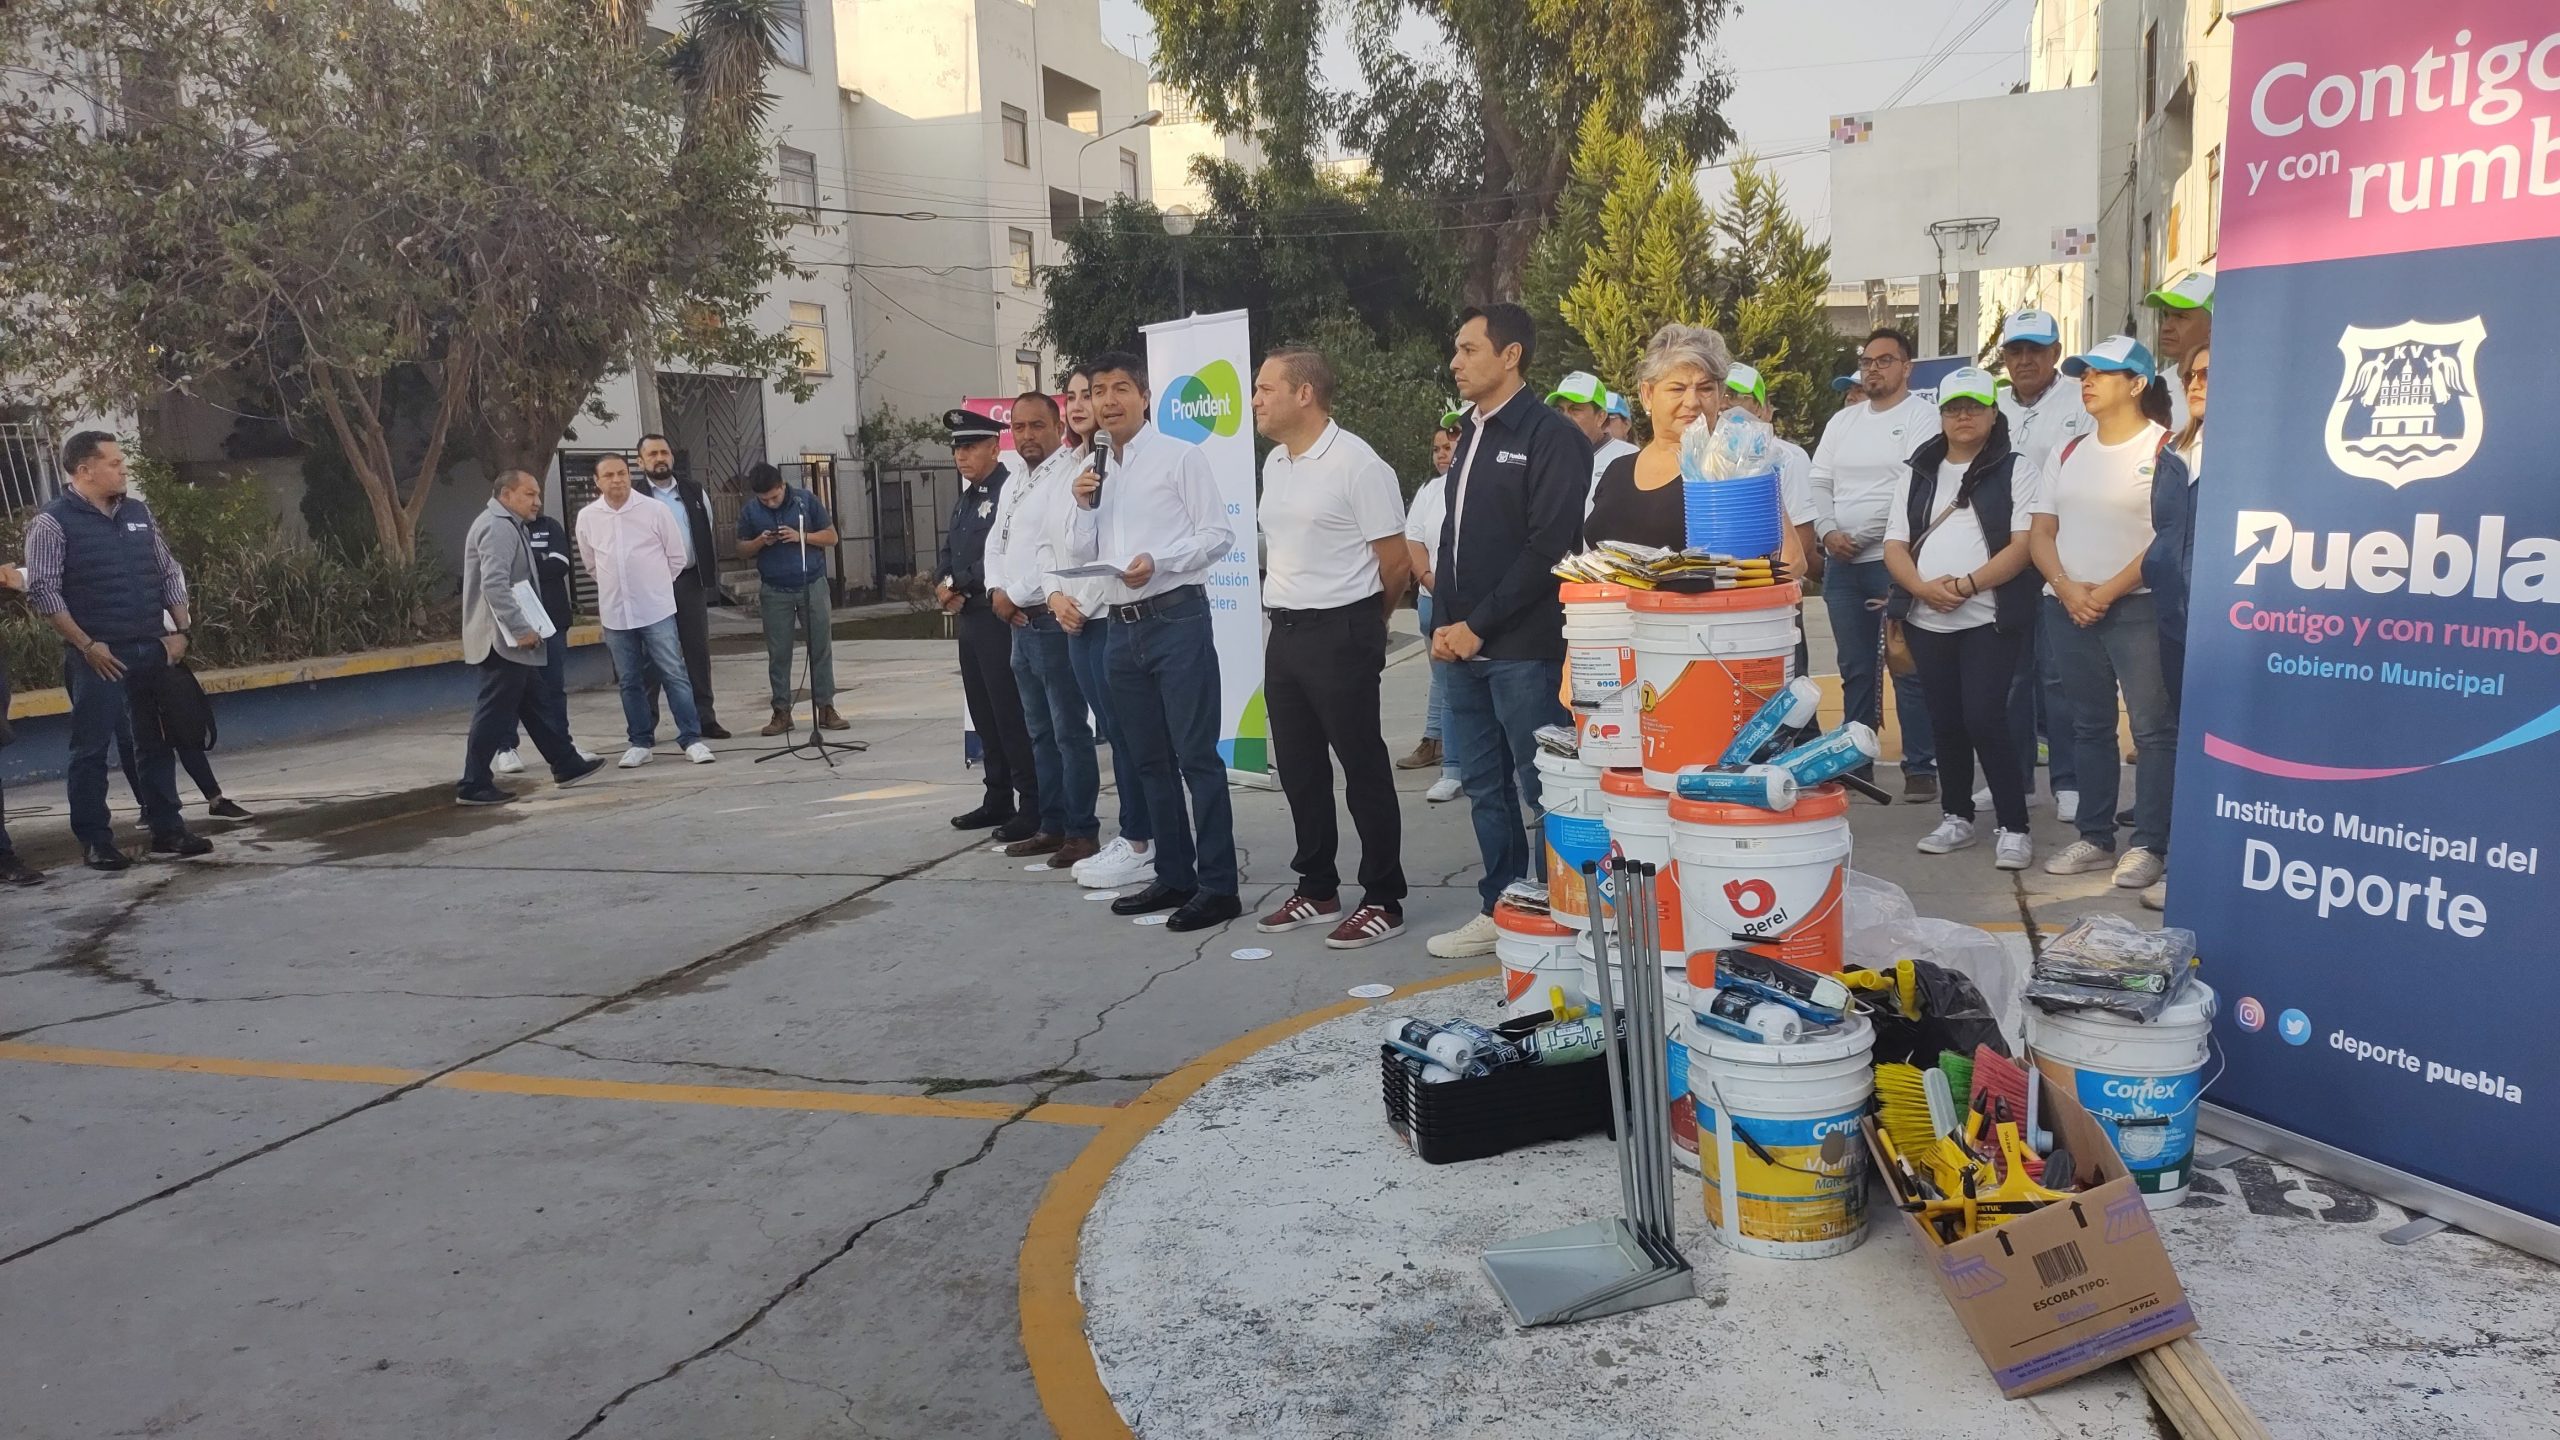 Video desde Puebla: Eduardo Rivera lanza advertencia a sus colaboradores sobre actos de campaña anticipados